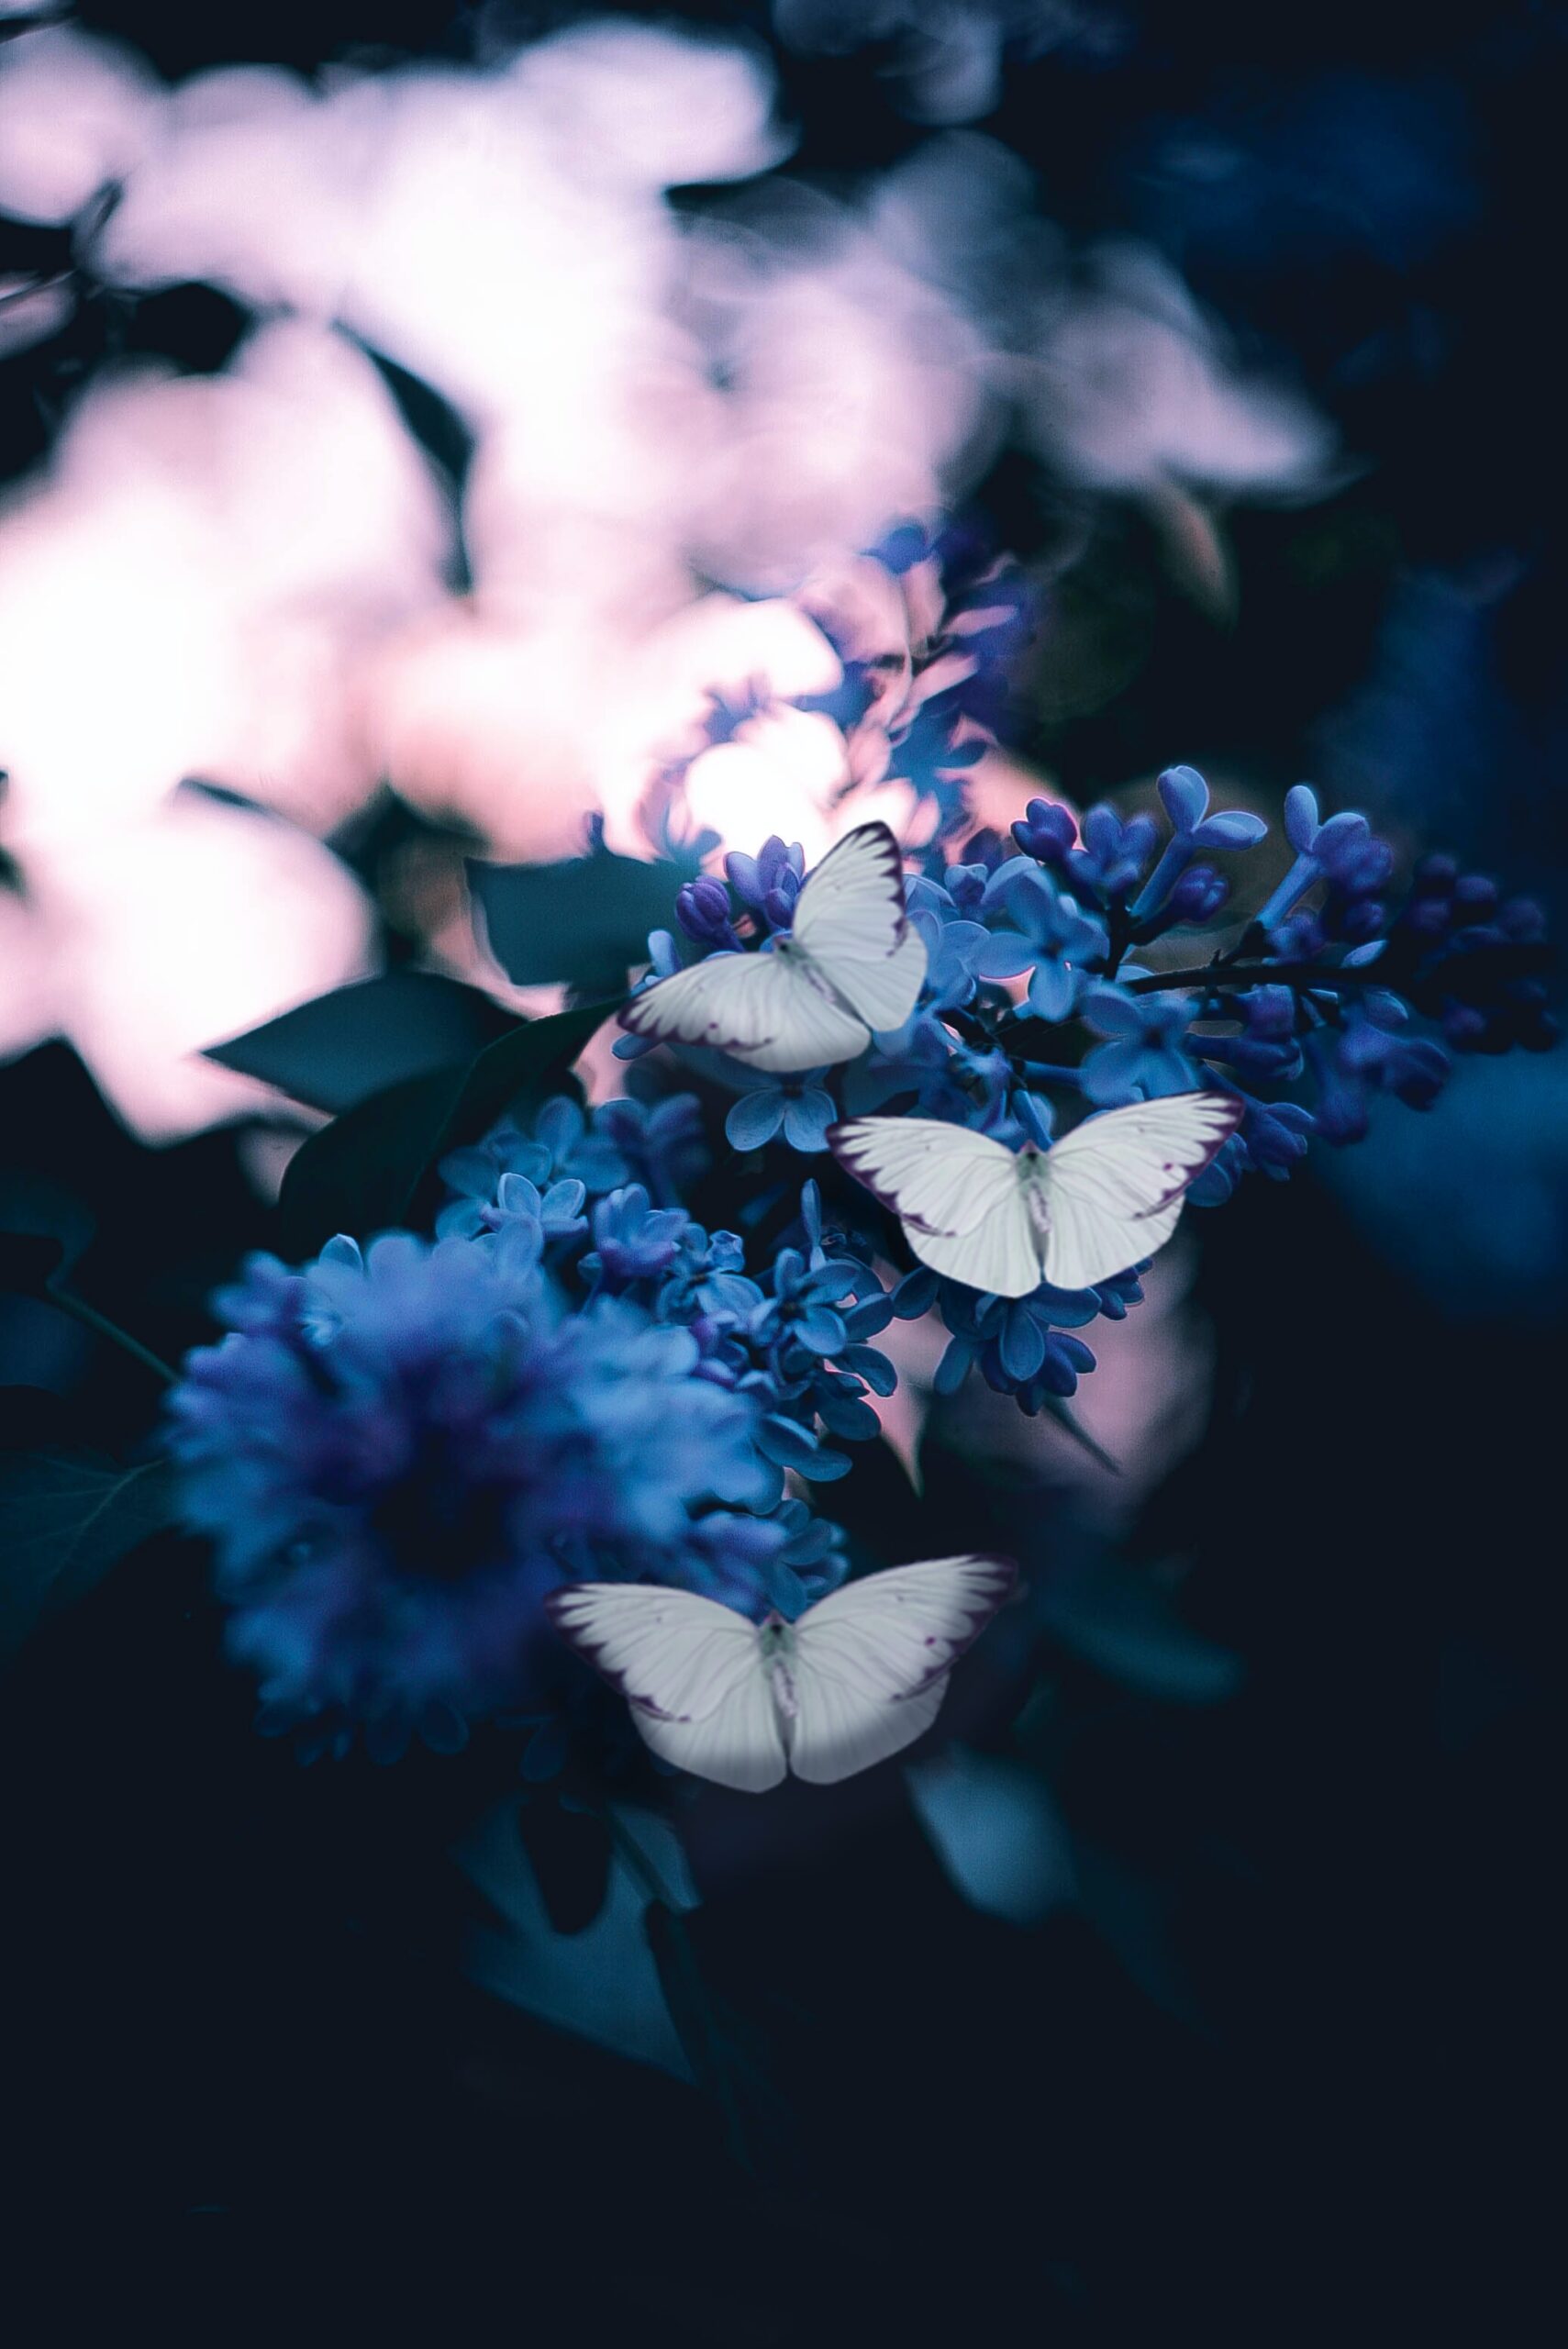 Schmetterlinge die auf einem blühenden Zweig sitzen, alles ist leicht blau getönt.